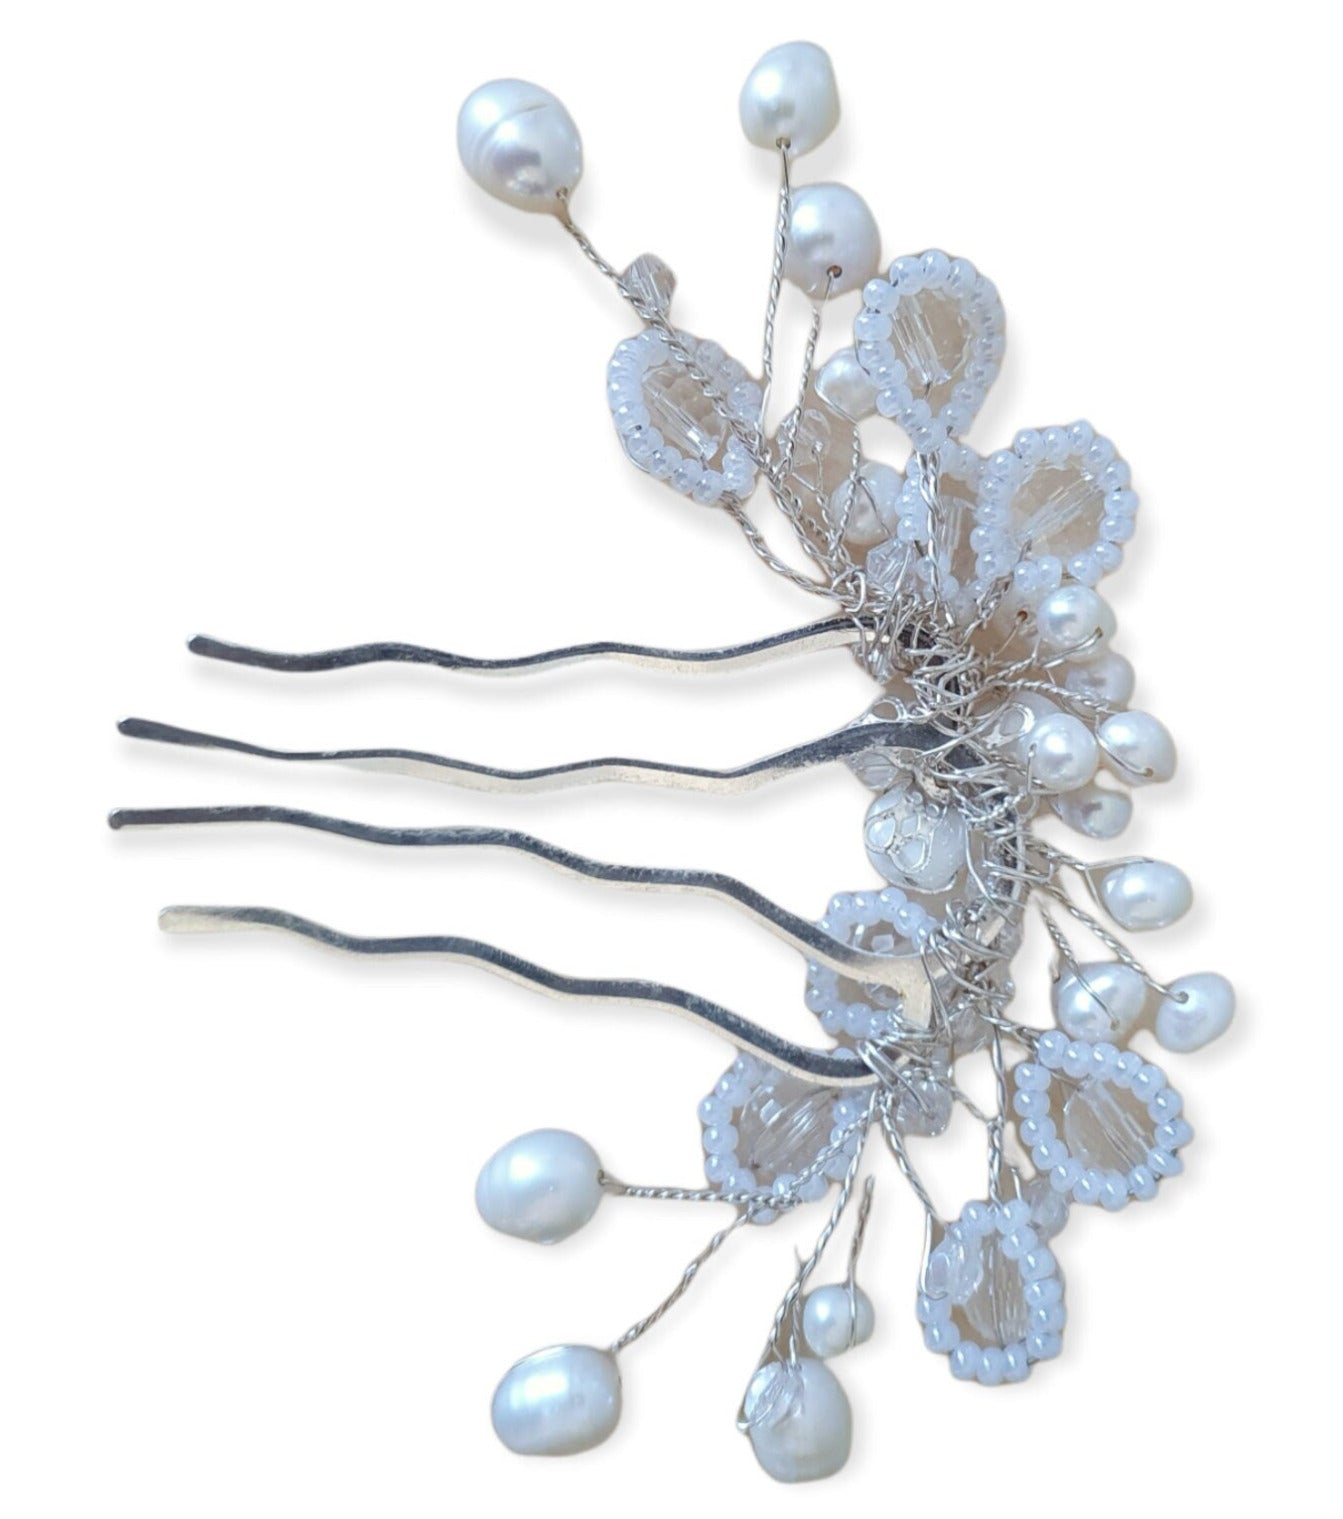 Peineta de novia hecha a mano con perlas blancas de agua dulce, Elegante y única para ocasiones especiales, accesorios para el cabello